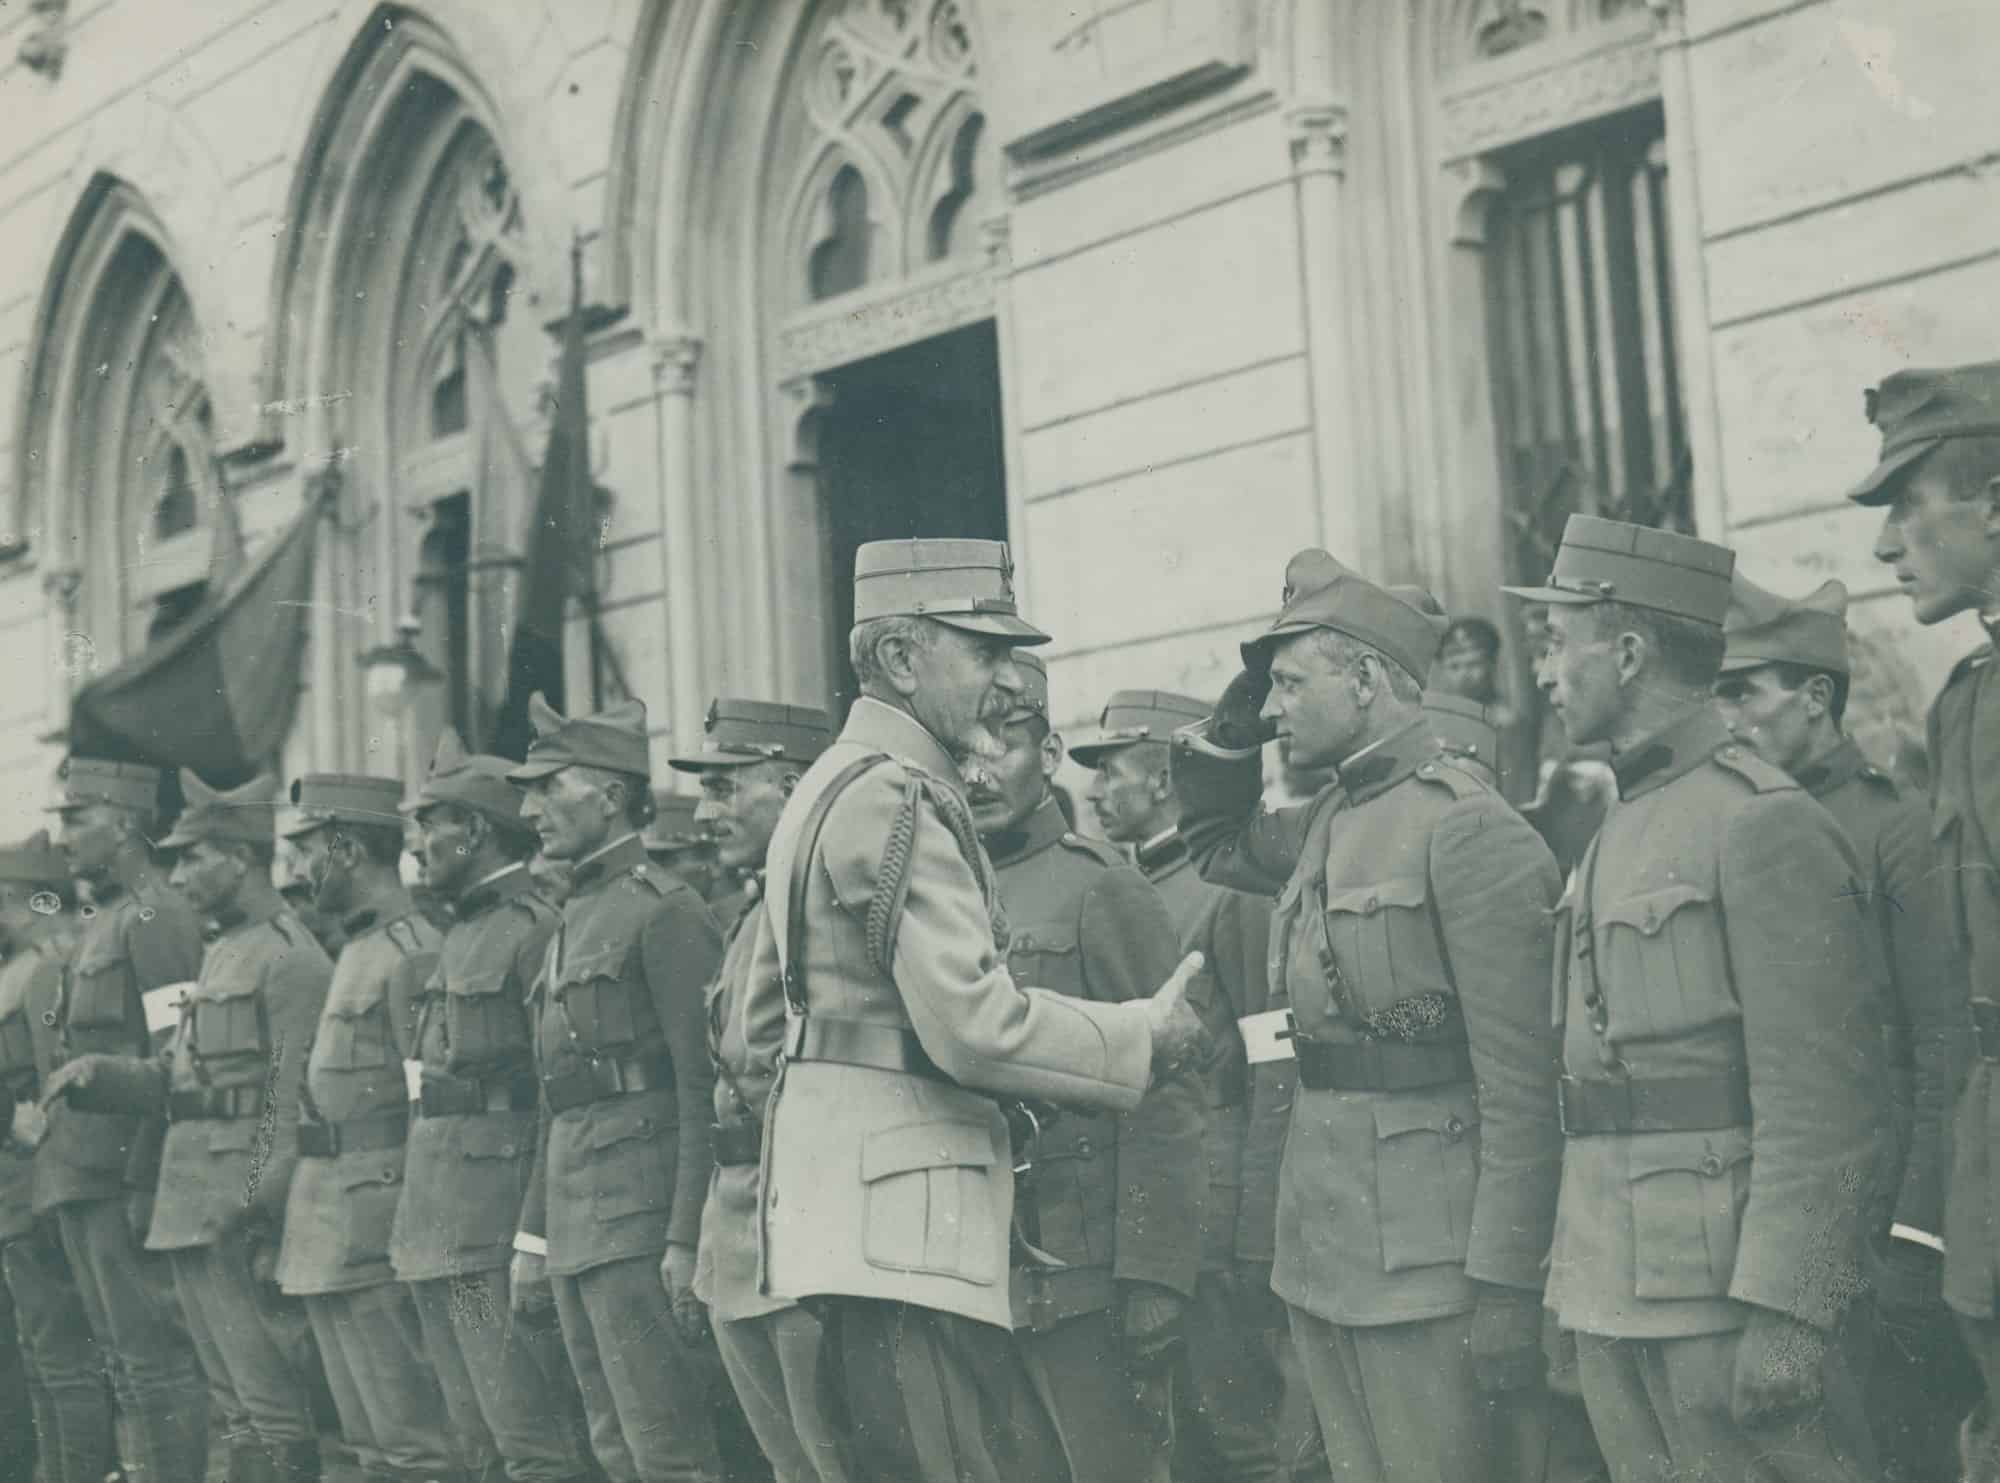 Generalul Prezan saluta ofiterii voluntari Ardeleni - gara Iasi, iunie 1917